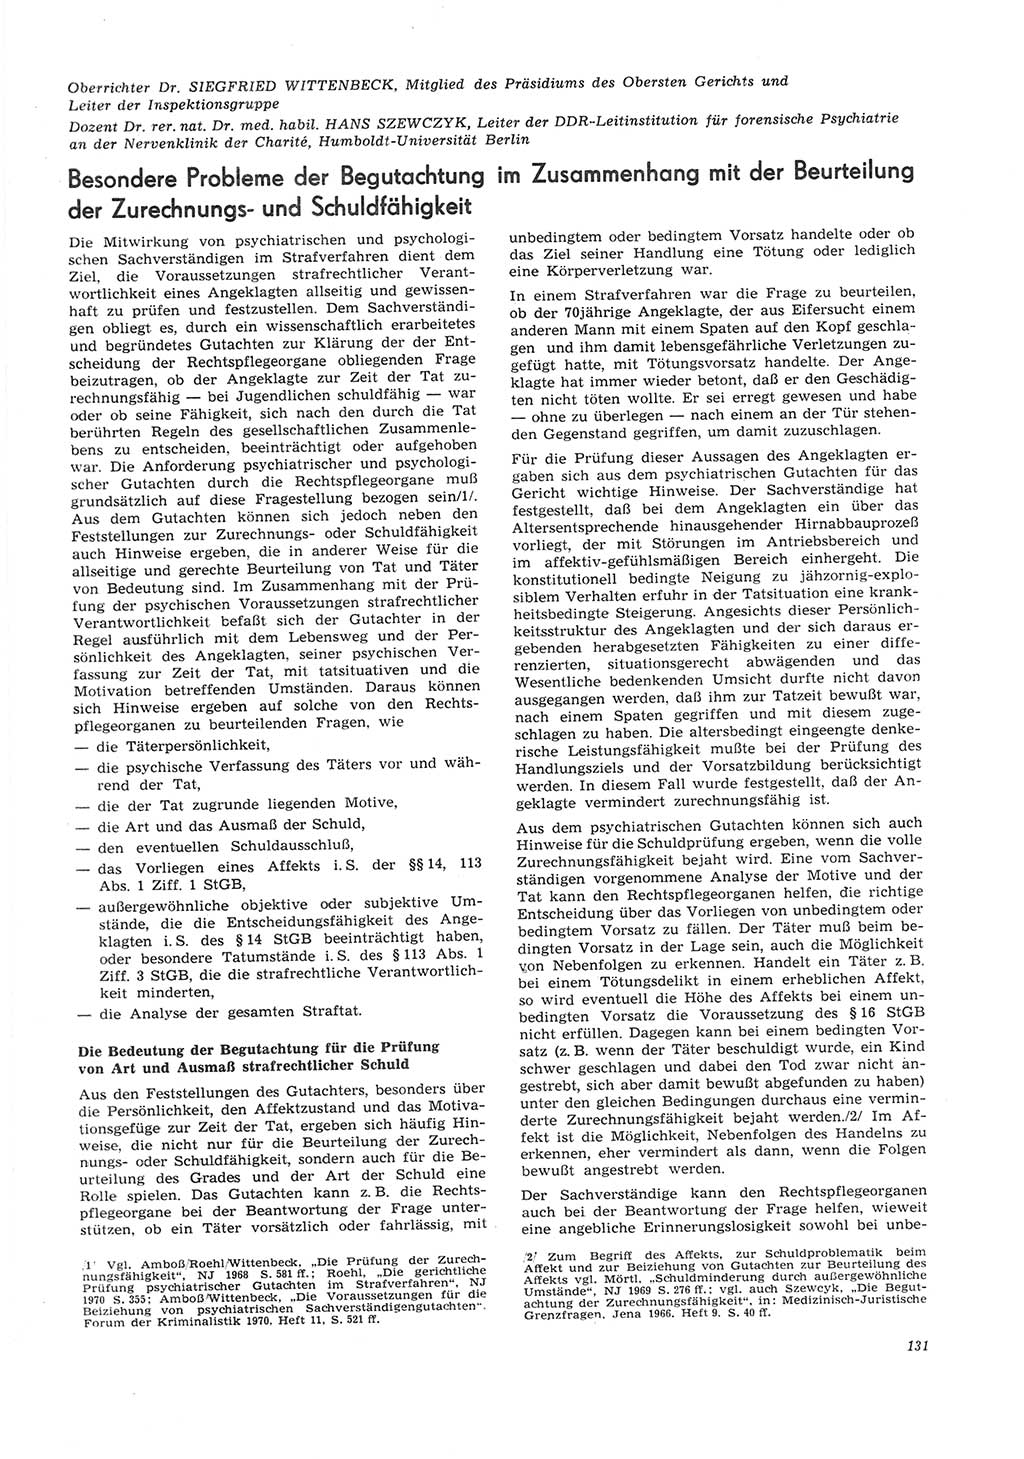 Neue Justiz (NJ), Zeitschrift für Recht und Rechtswissenschaft [Deutsche Demokratische Republik (DDR)], 26. Jahrgang 1972, Seite 131 (NJ DDR 1972, S. 131)